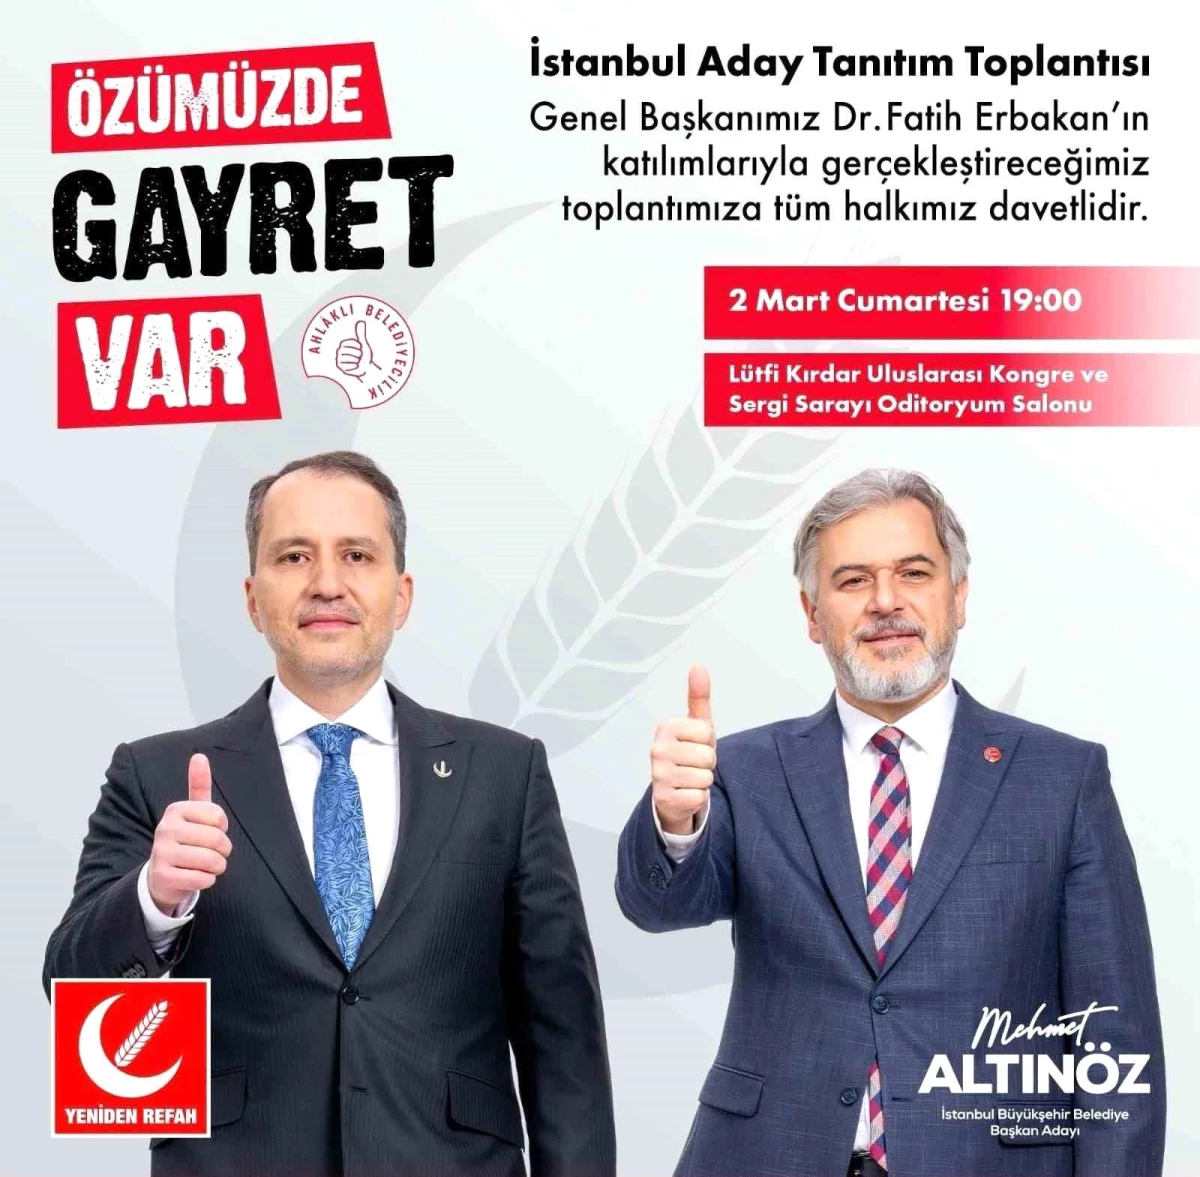 Yeniden Refah Partisi İstanbul Büyükşehir Belediye Başkan Adayı Mehmet Altınöz Projelerini Açıklıyor